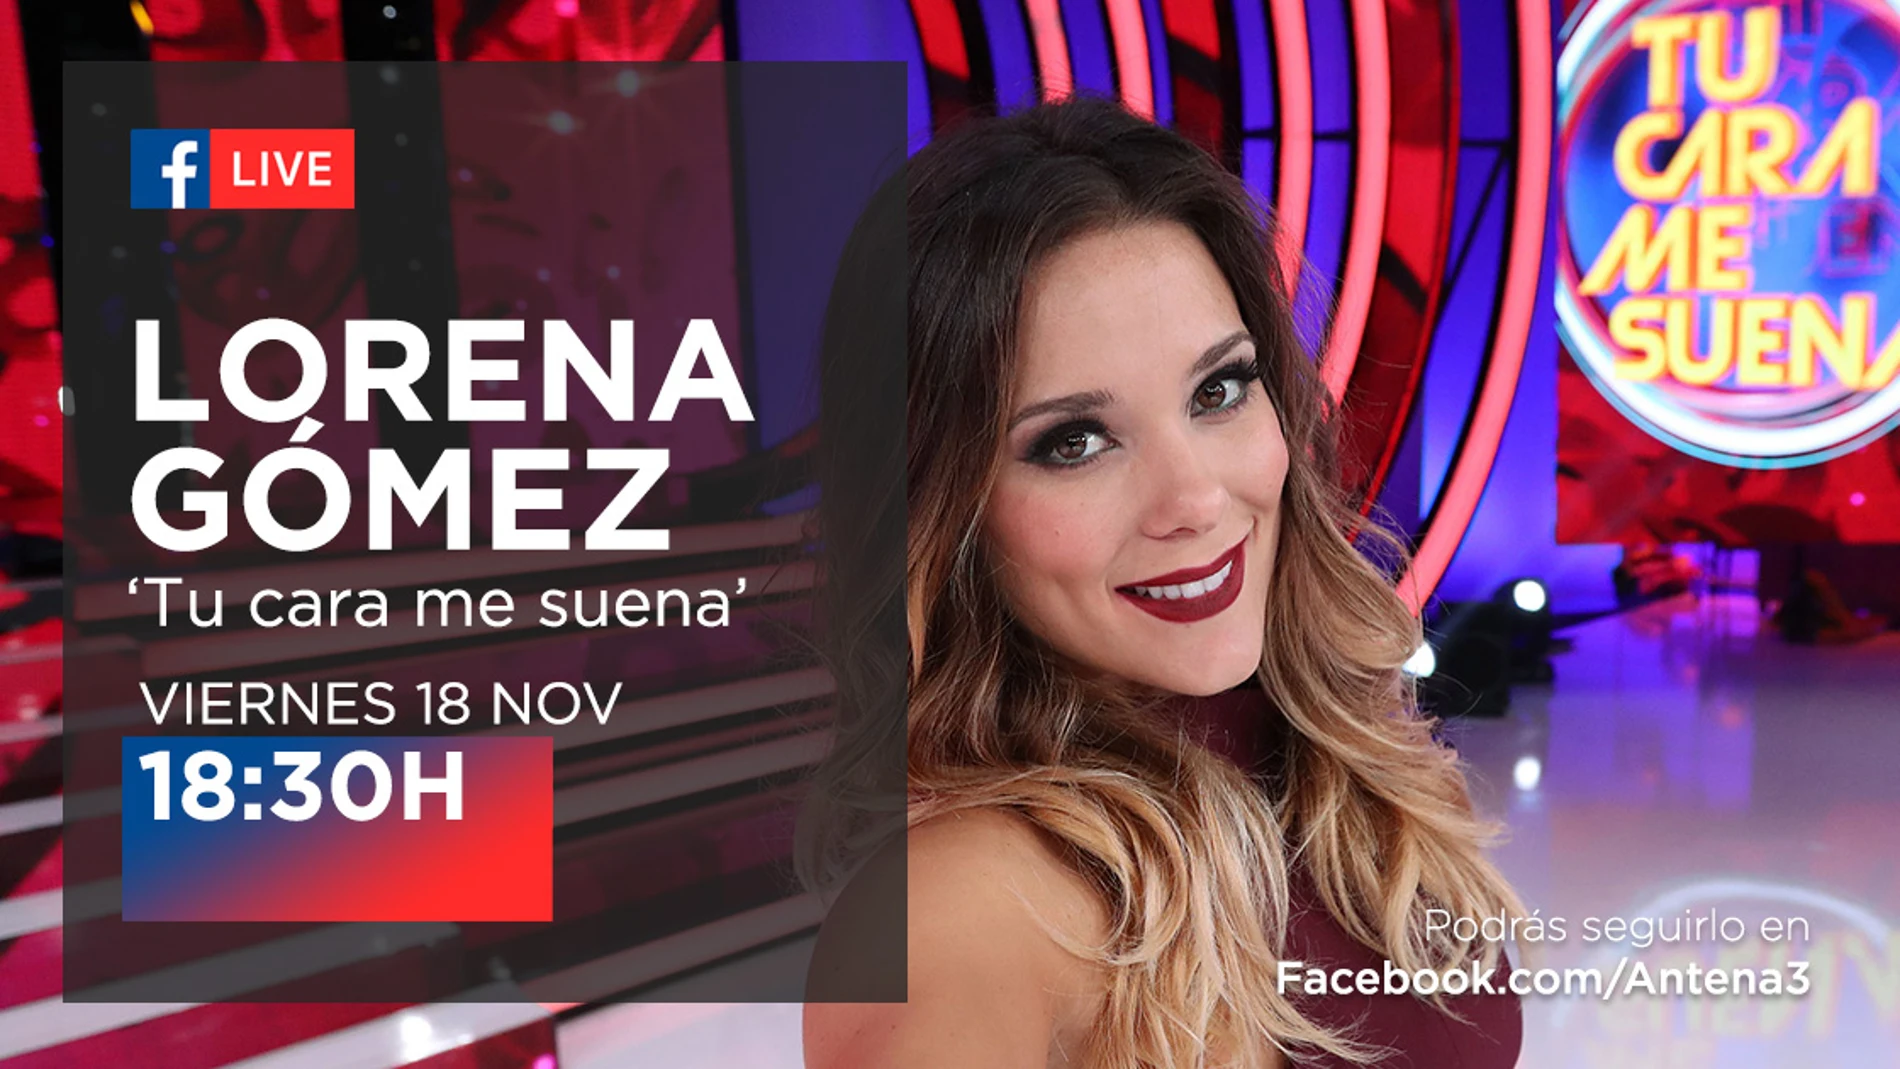 Lorena Gómez estará en directo con los seguidores de 'Tu cara me suena' en Facebook Live 